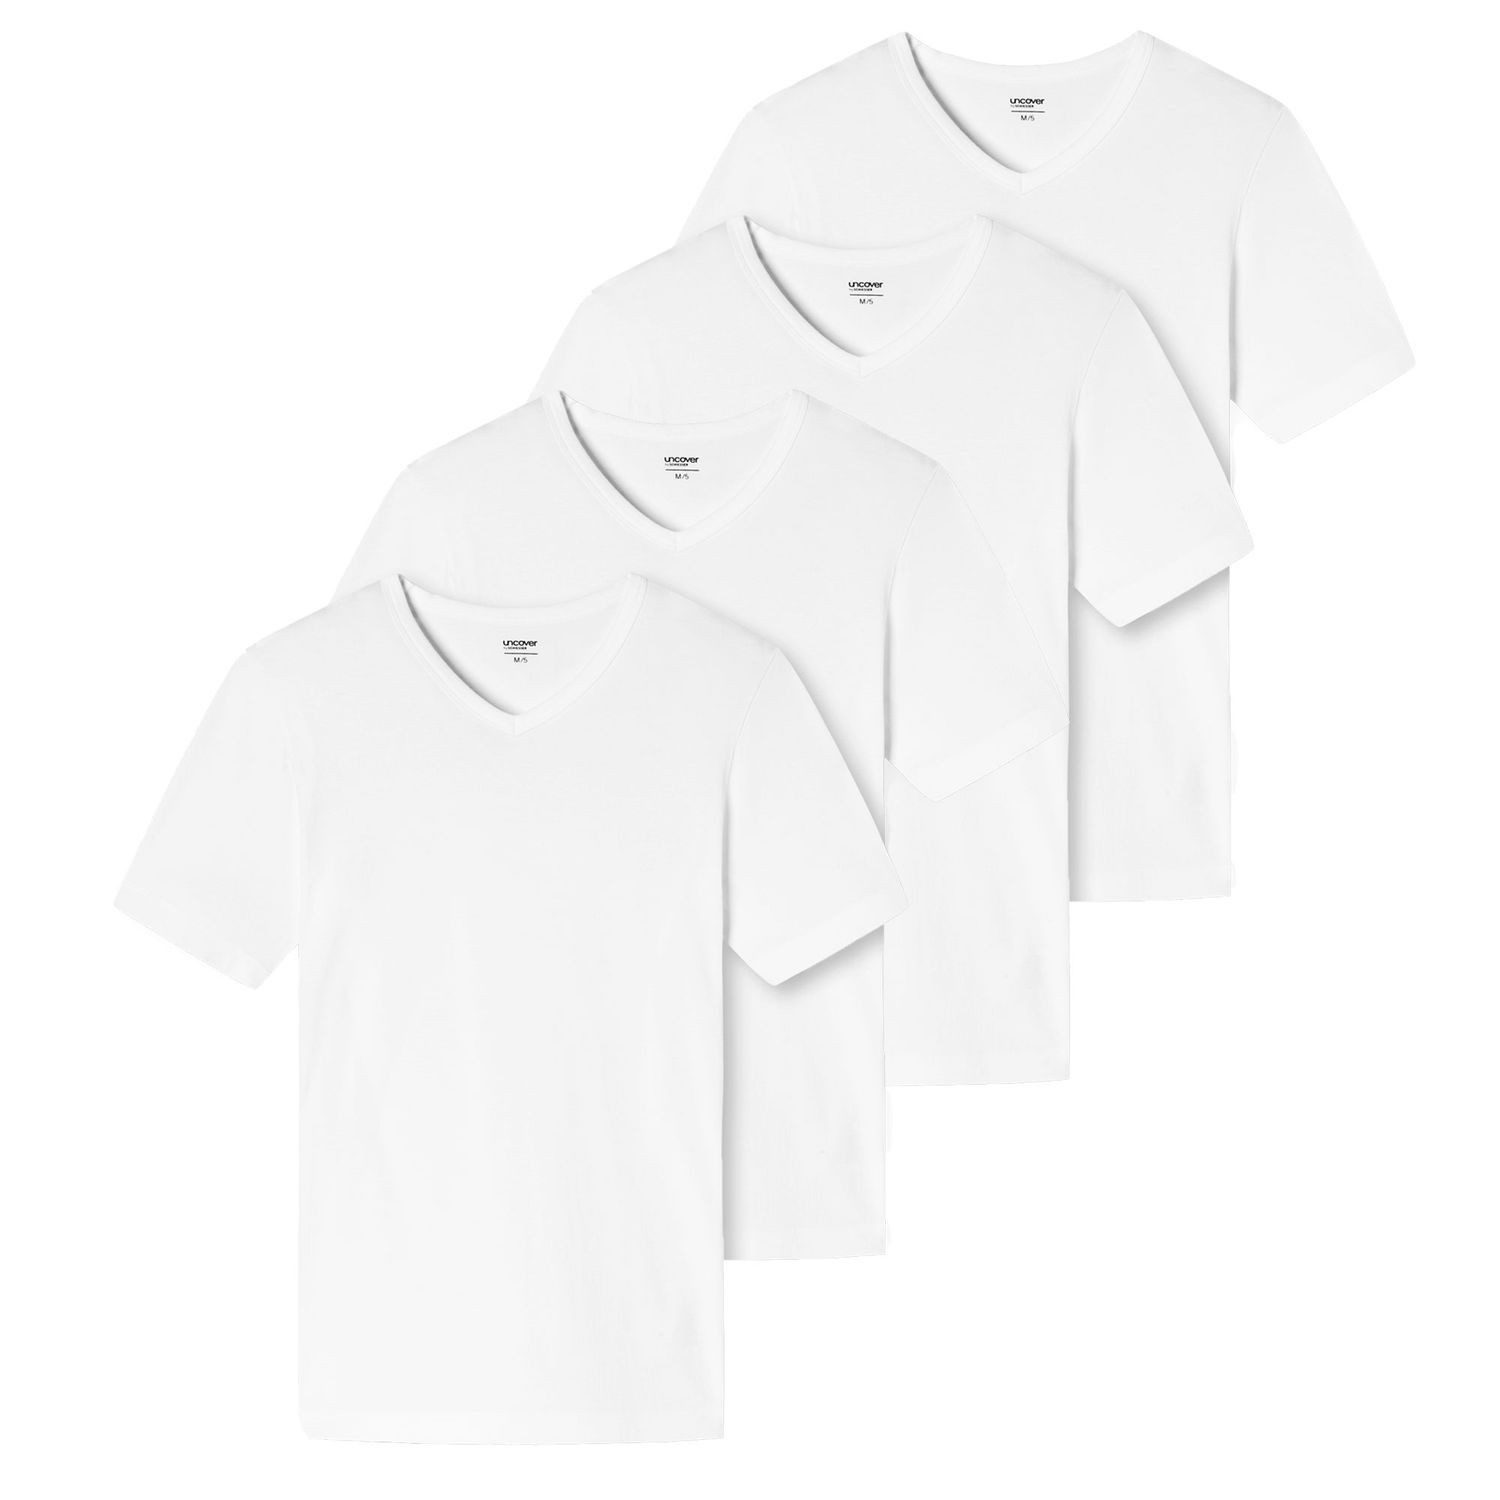 uncover by SCHIESSER T-Shirt Basic hochwertig, weich, mit V-Ausschnitt im 4er Pack